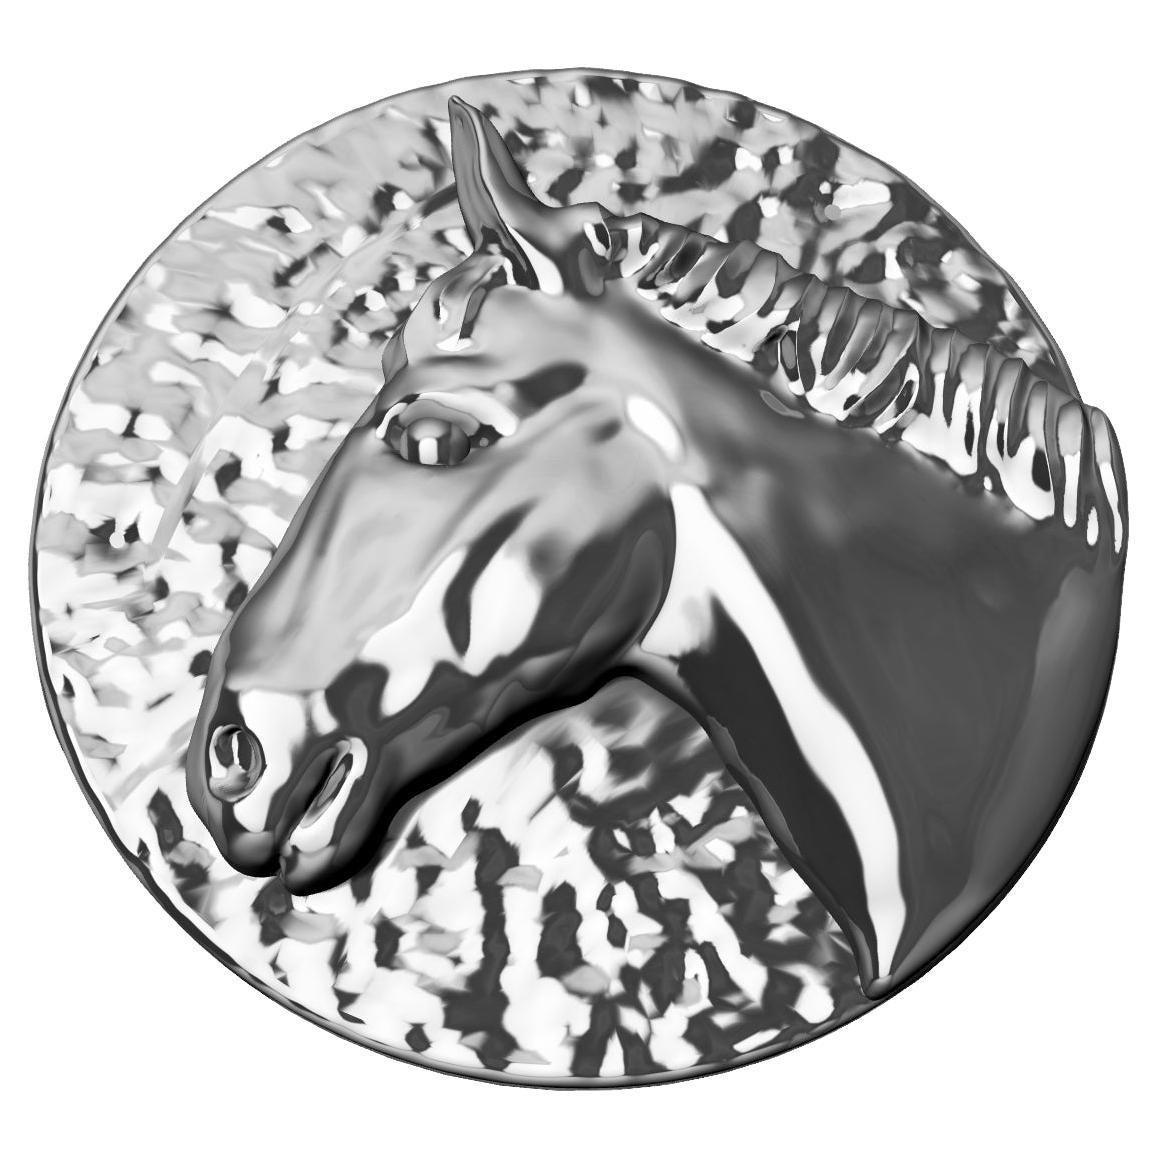 Platinum Horse Signet Ring